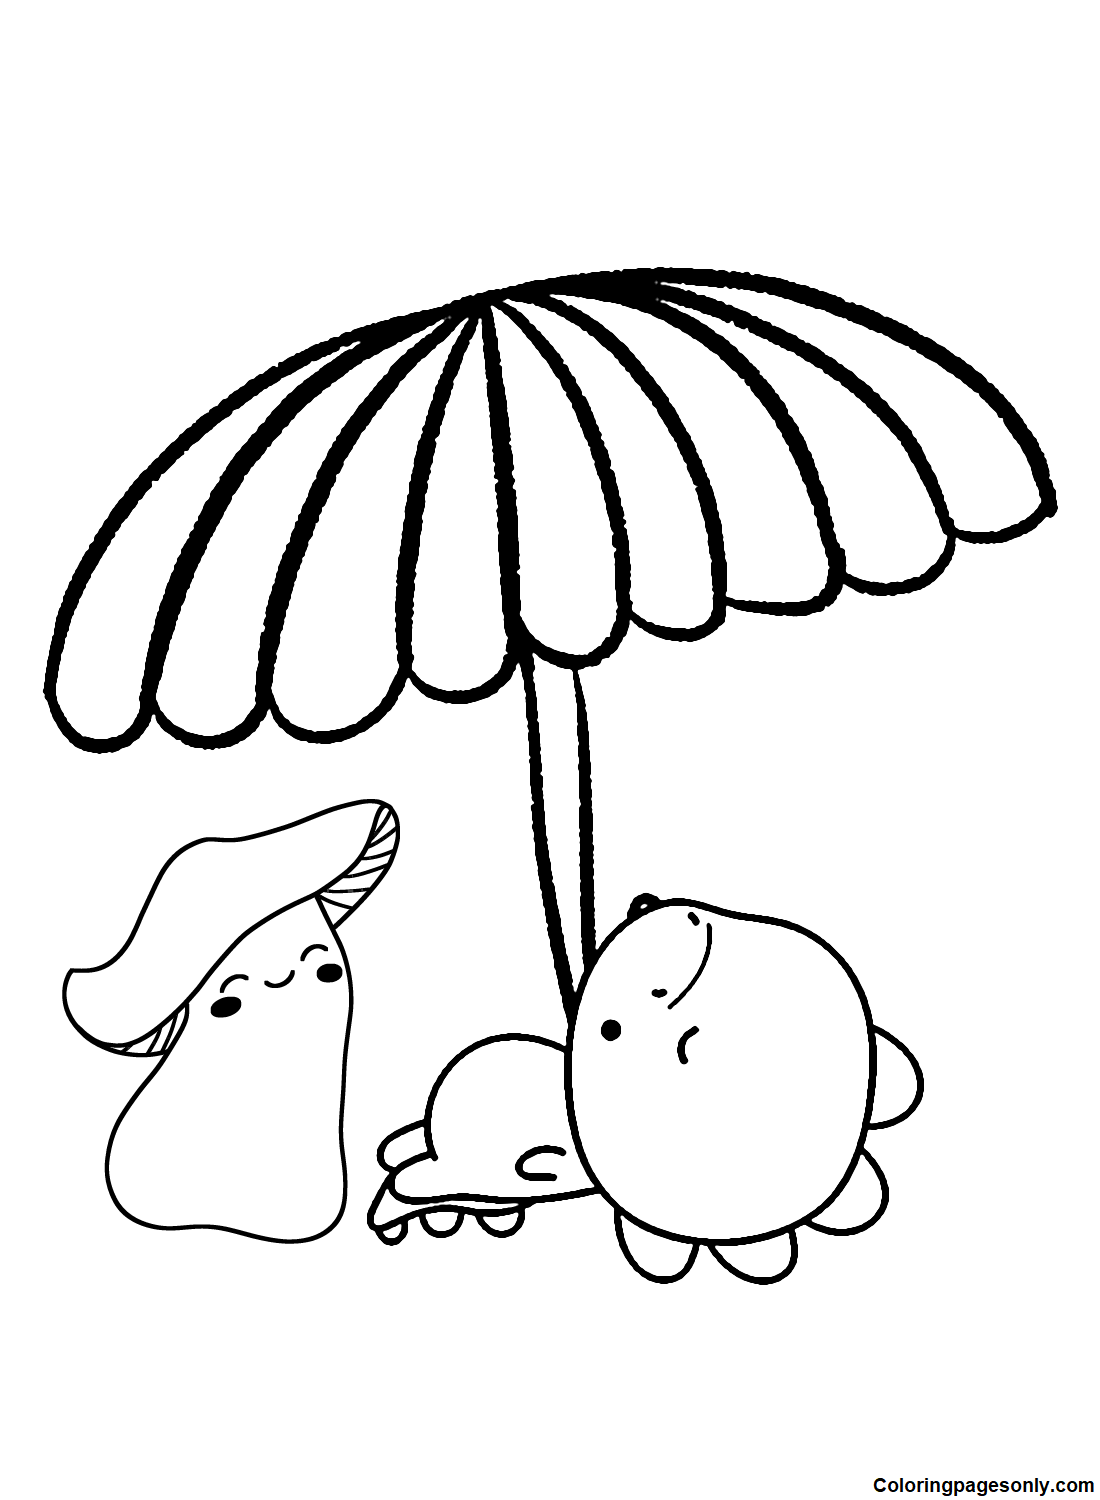 Картинки Зонтик из Umbrella